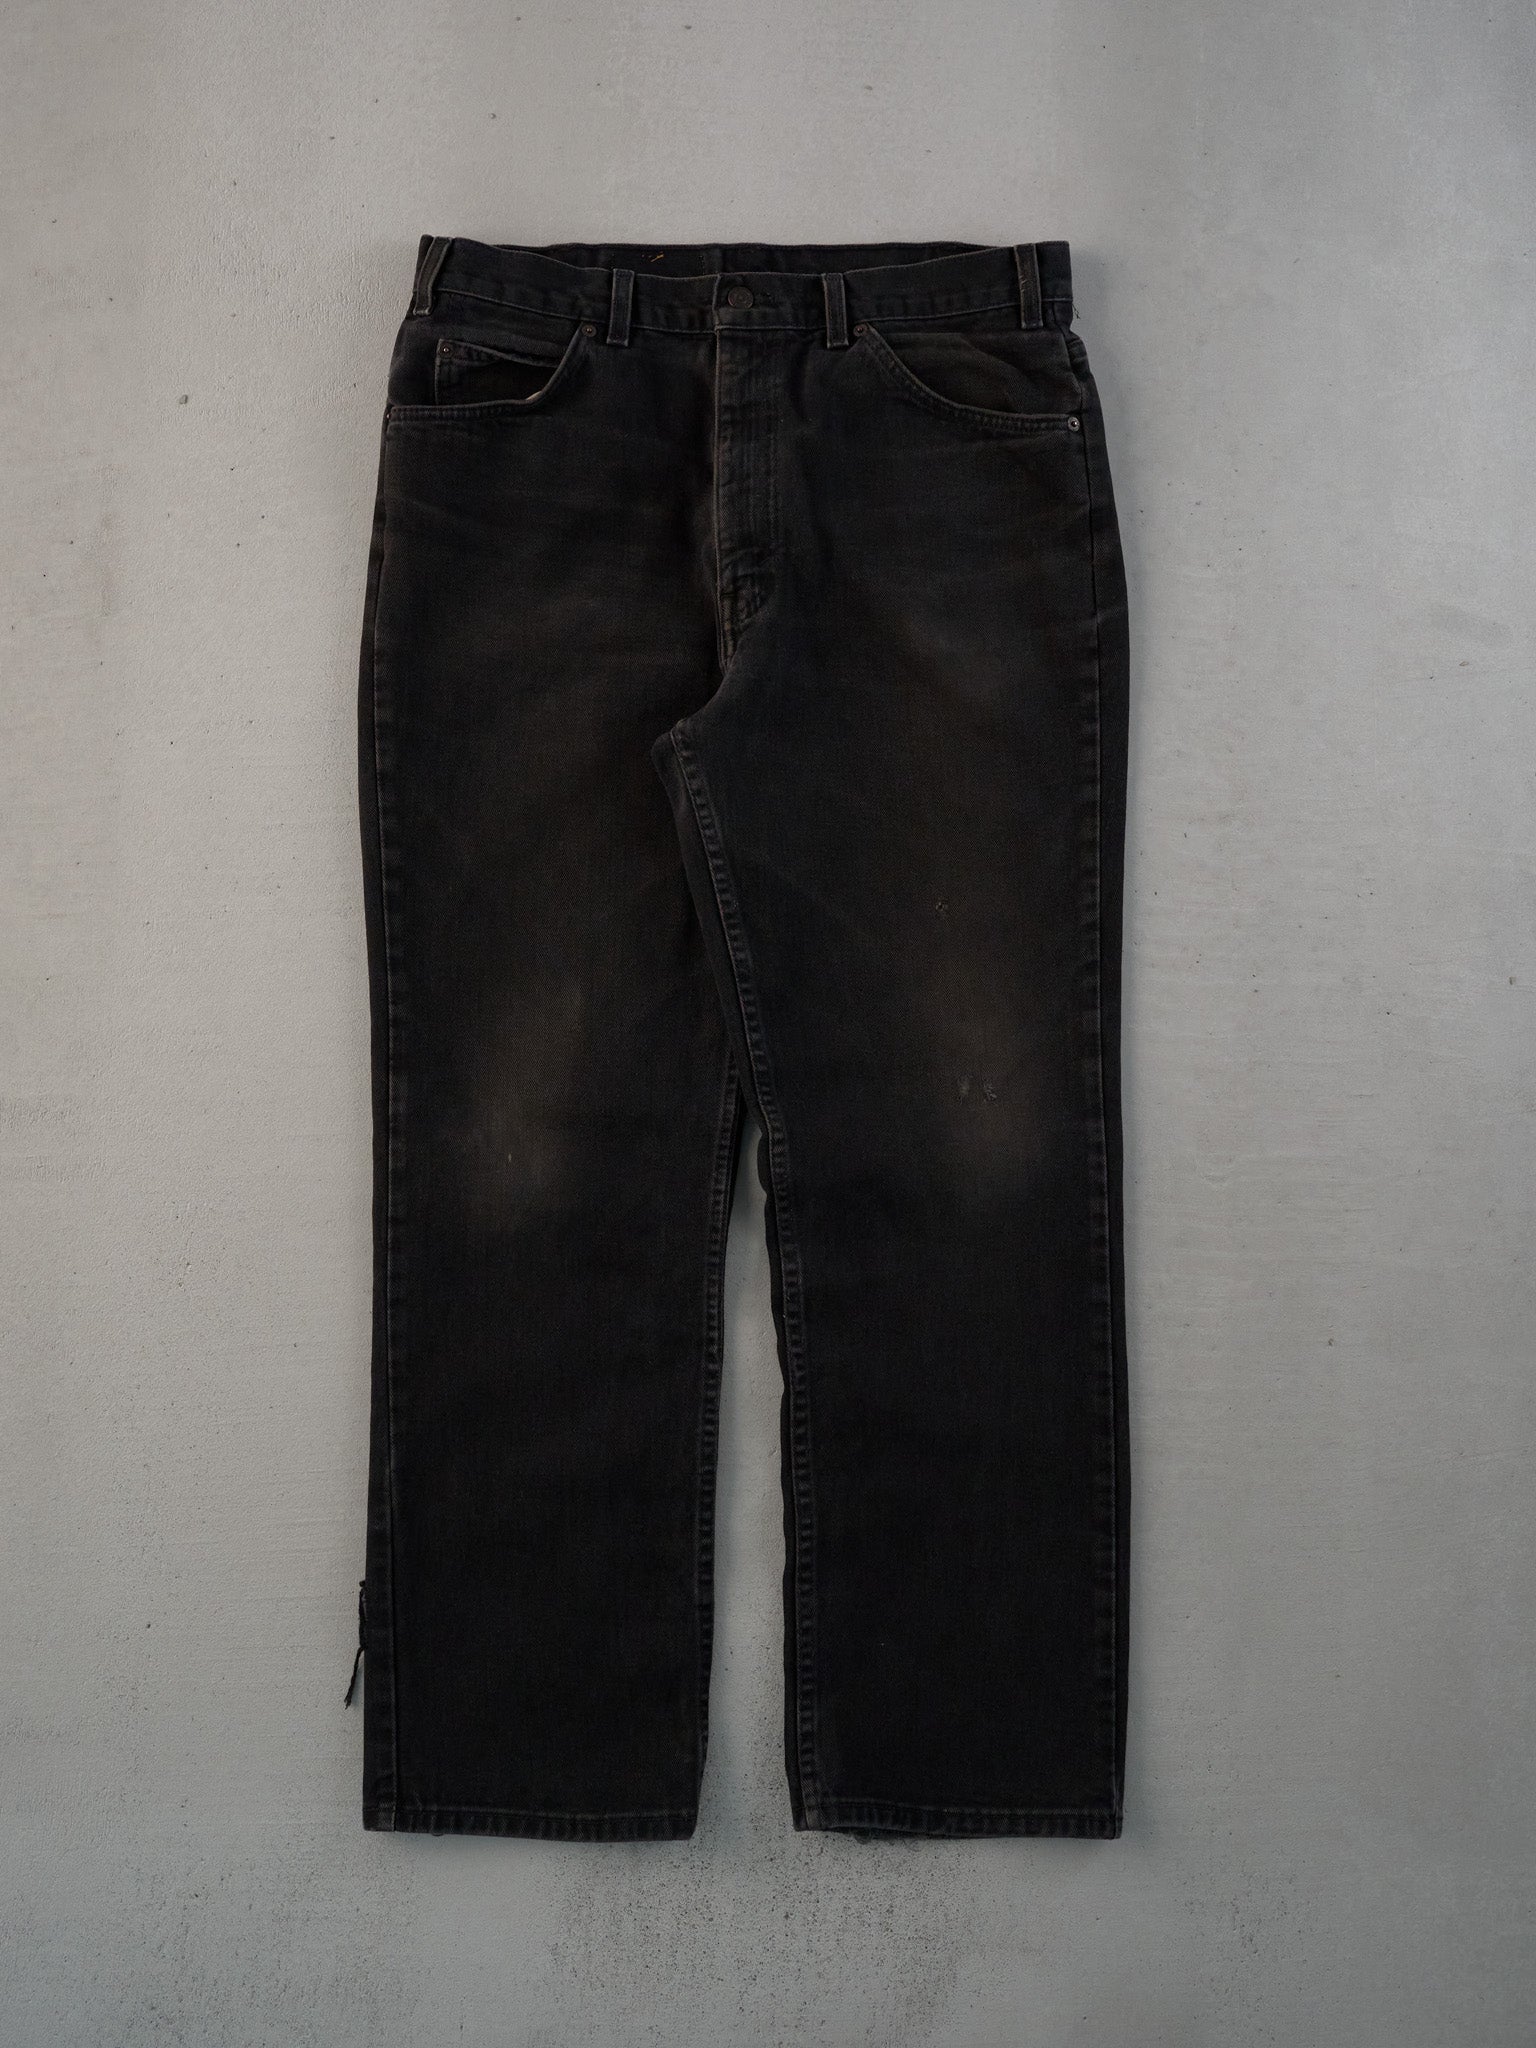 Vintage 70s Black Levi's 506 Denim Jeans (34x29)